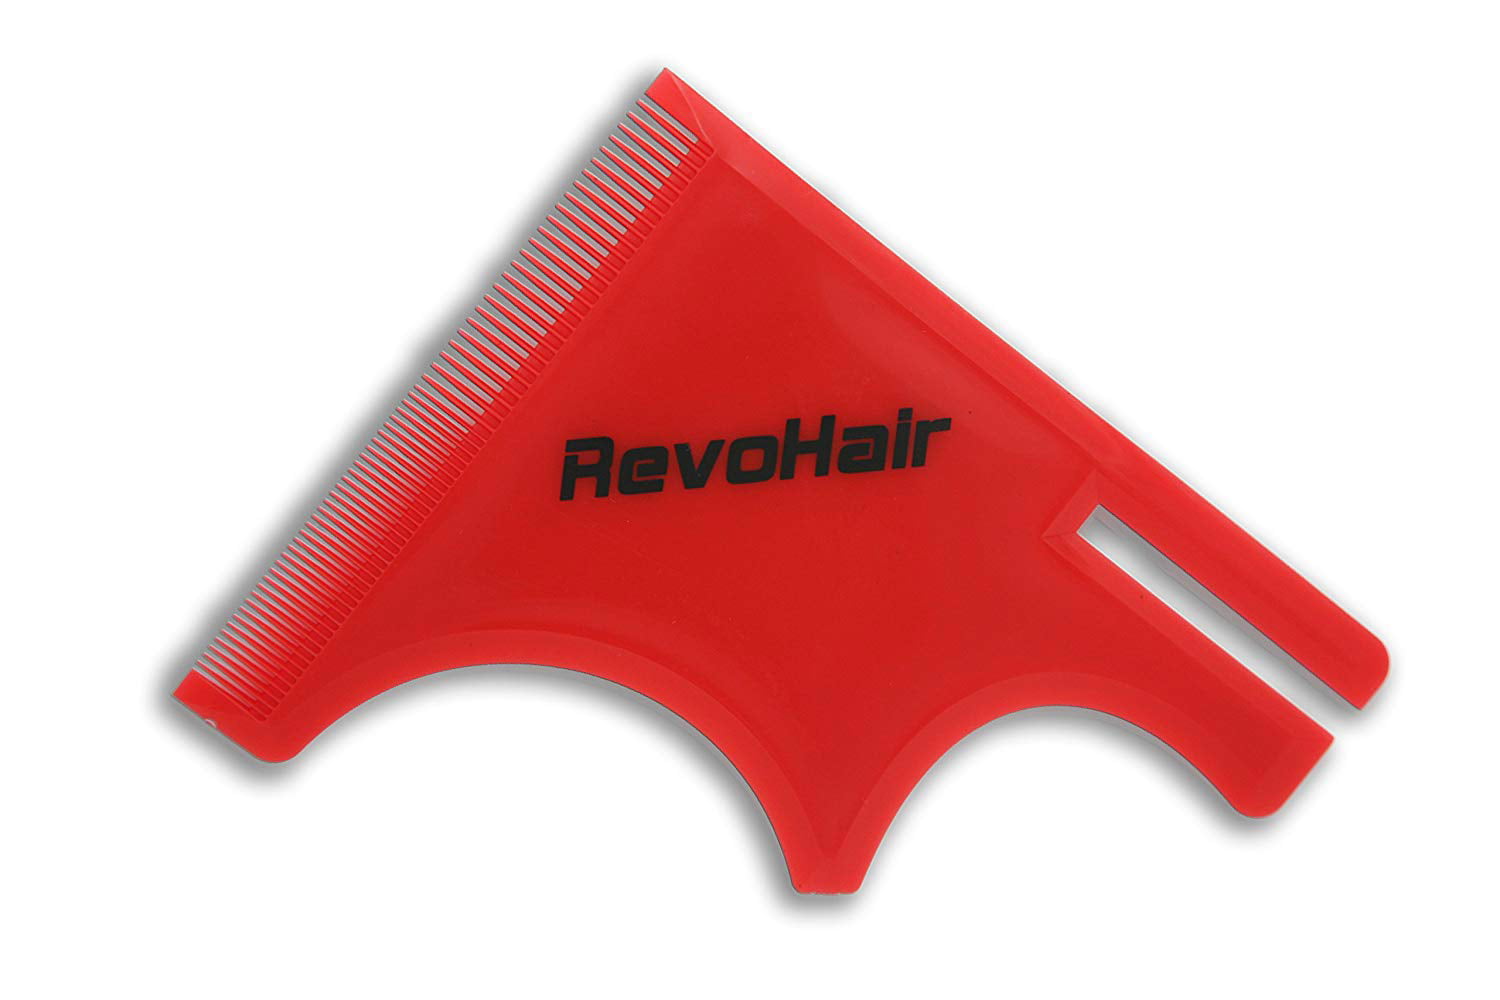 revohair haircut tool